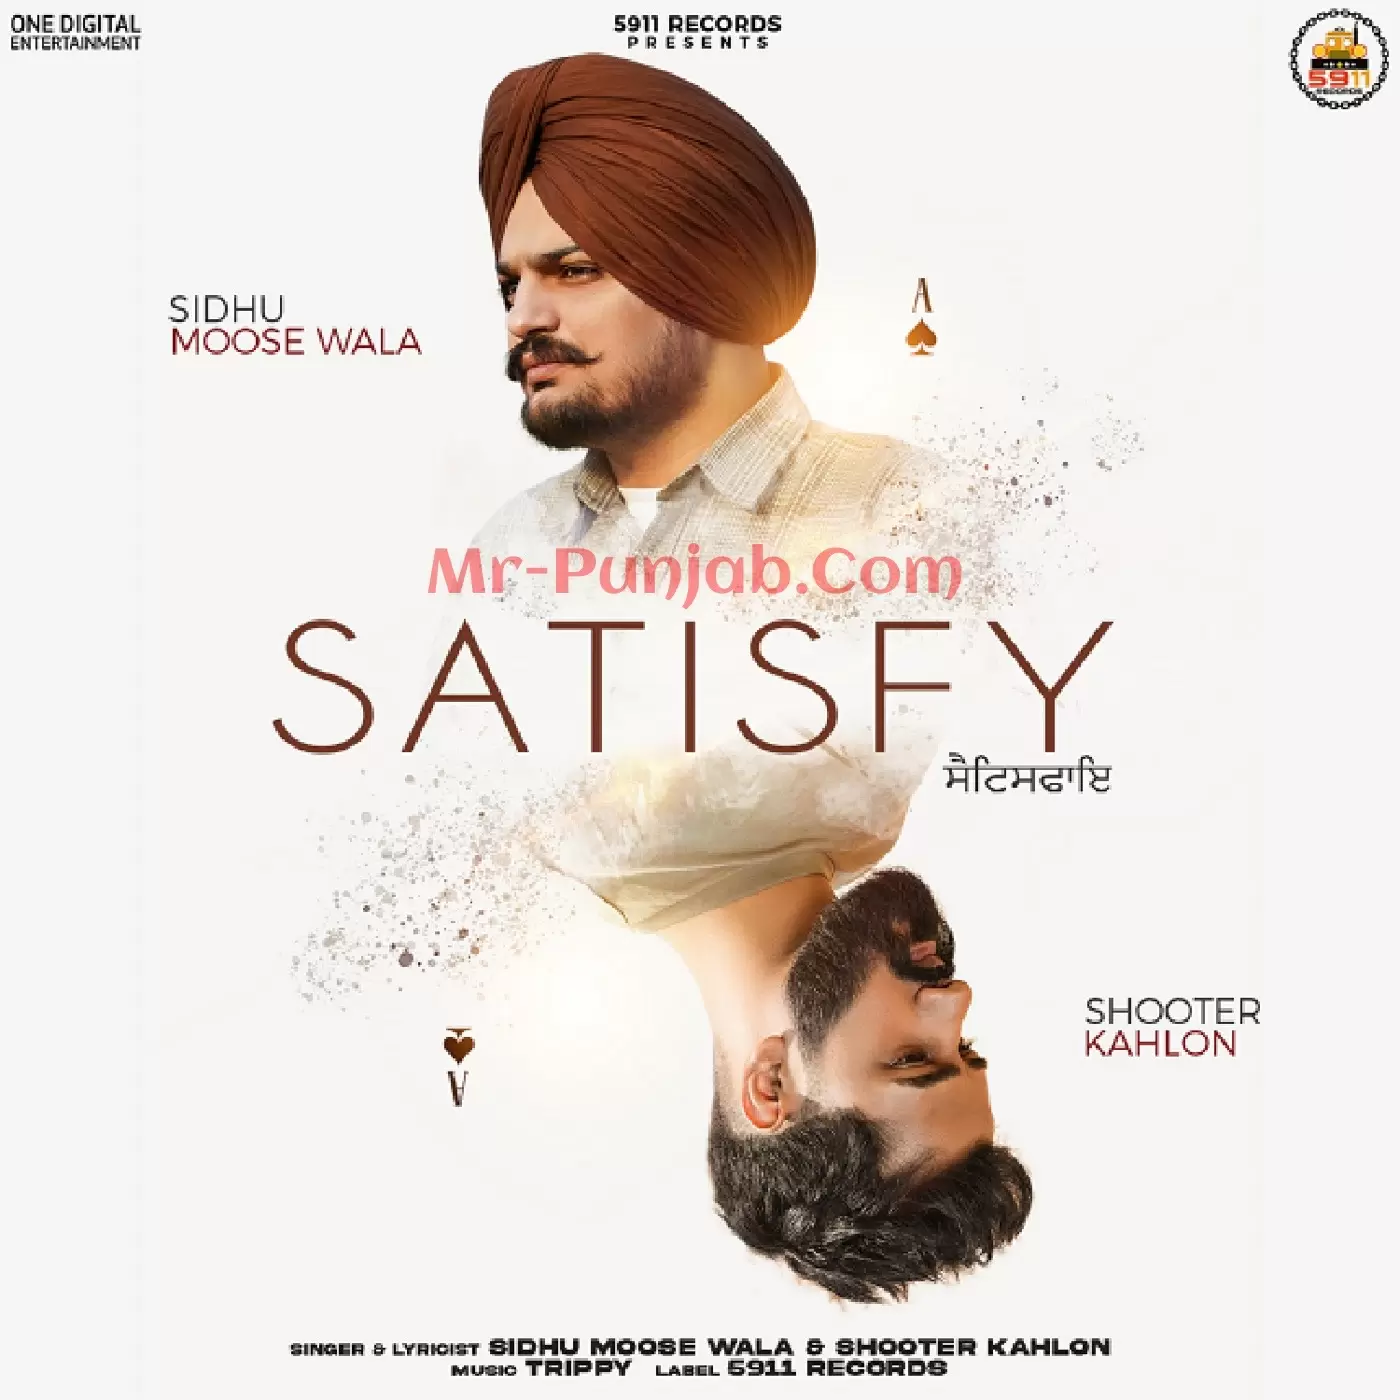 Satisfy Sidhu Moose Wala Mp3 Download Song - Mr-Punjab